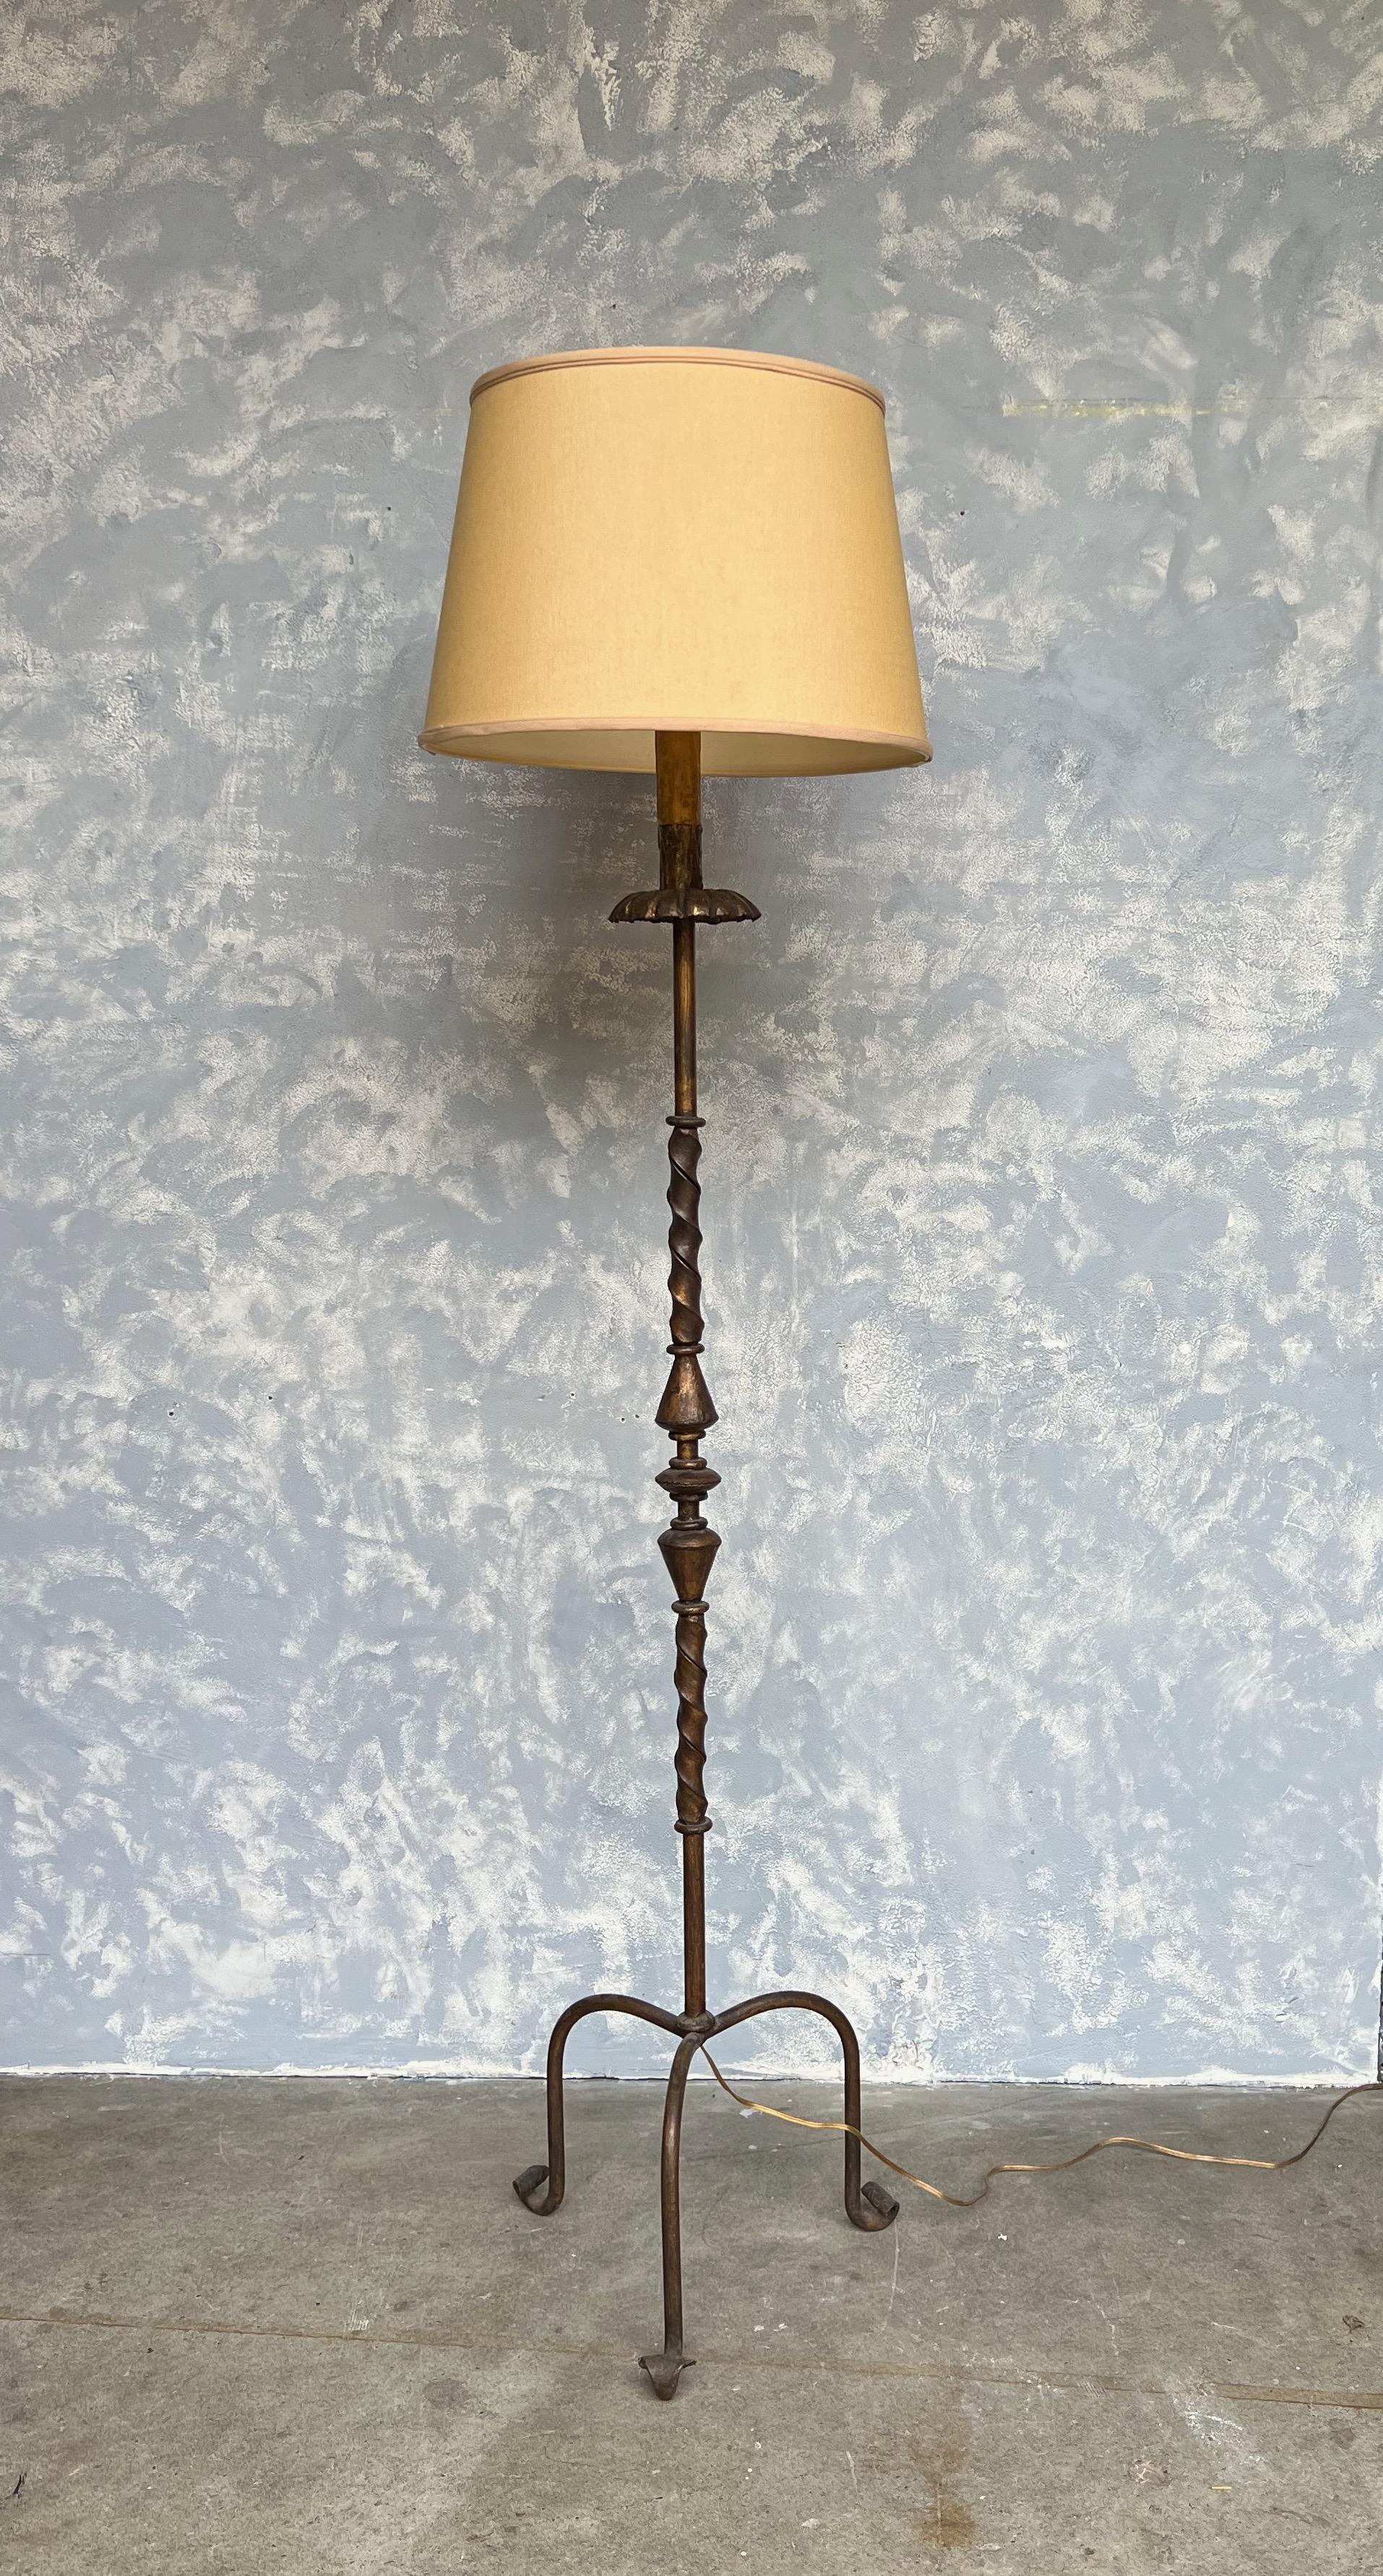 Ce lampadaire espagnol en fer doré, datant des années 1950, est une pièce distinctive avec sa base tripode surélevée. La lampe possède une patine dorée vieillie et assombrie qui lui donne du caractère et un air d'antiquité. La partie supérieure de